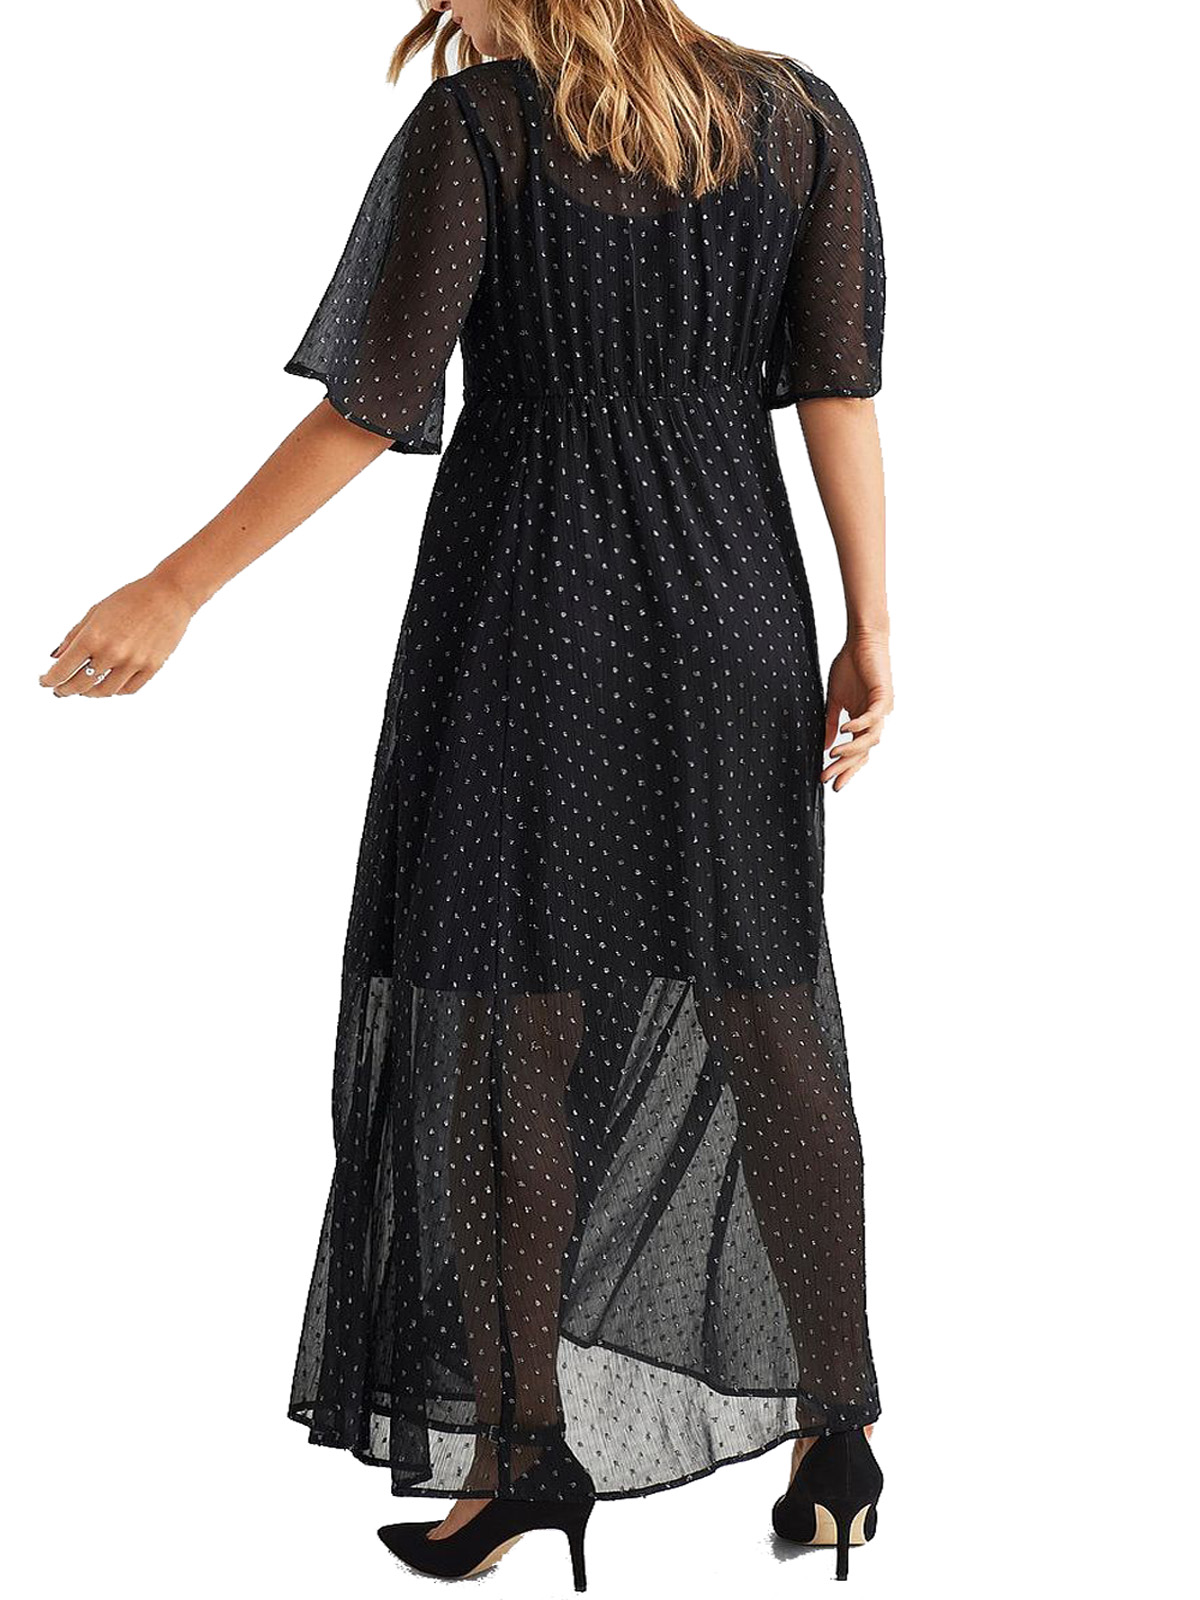 Ellos - - Ellos BLACK Sibel Polka Dot Angel Sleeve Maxi Dress - Size 8 ...